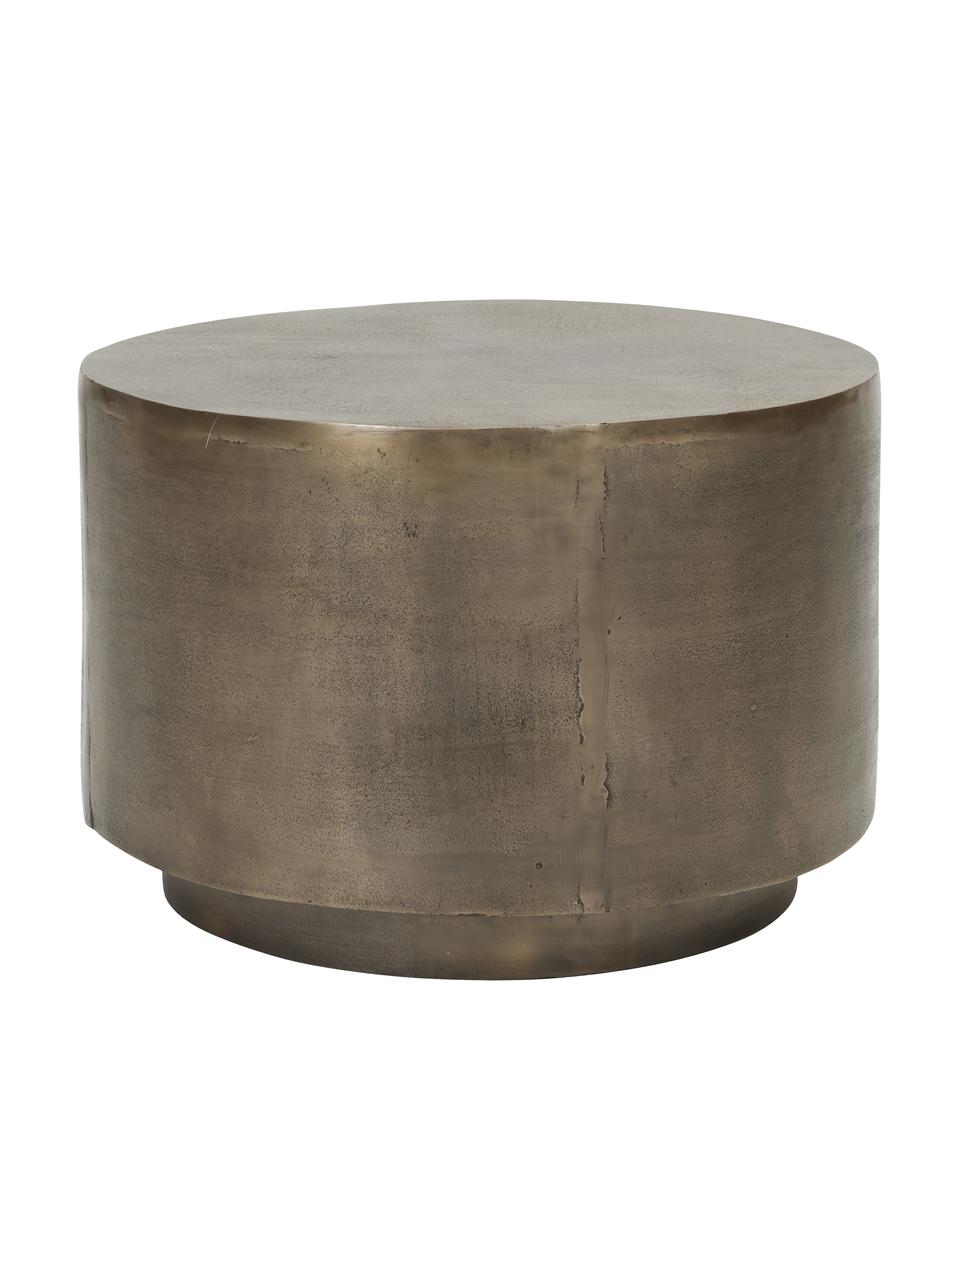 Table basse ronde façade nervurée Rota, Aluminium, enduit, MDF (panneau en fibres de bois à densité moyenne), Couleur laitonnée, Ø 50 cm